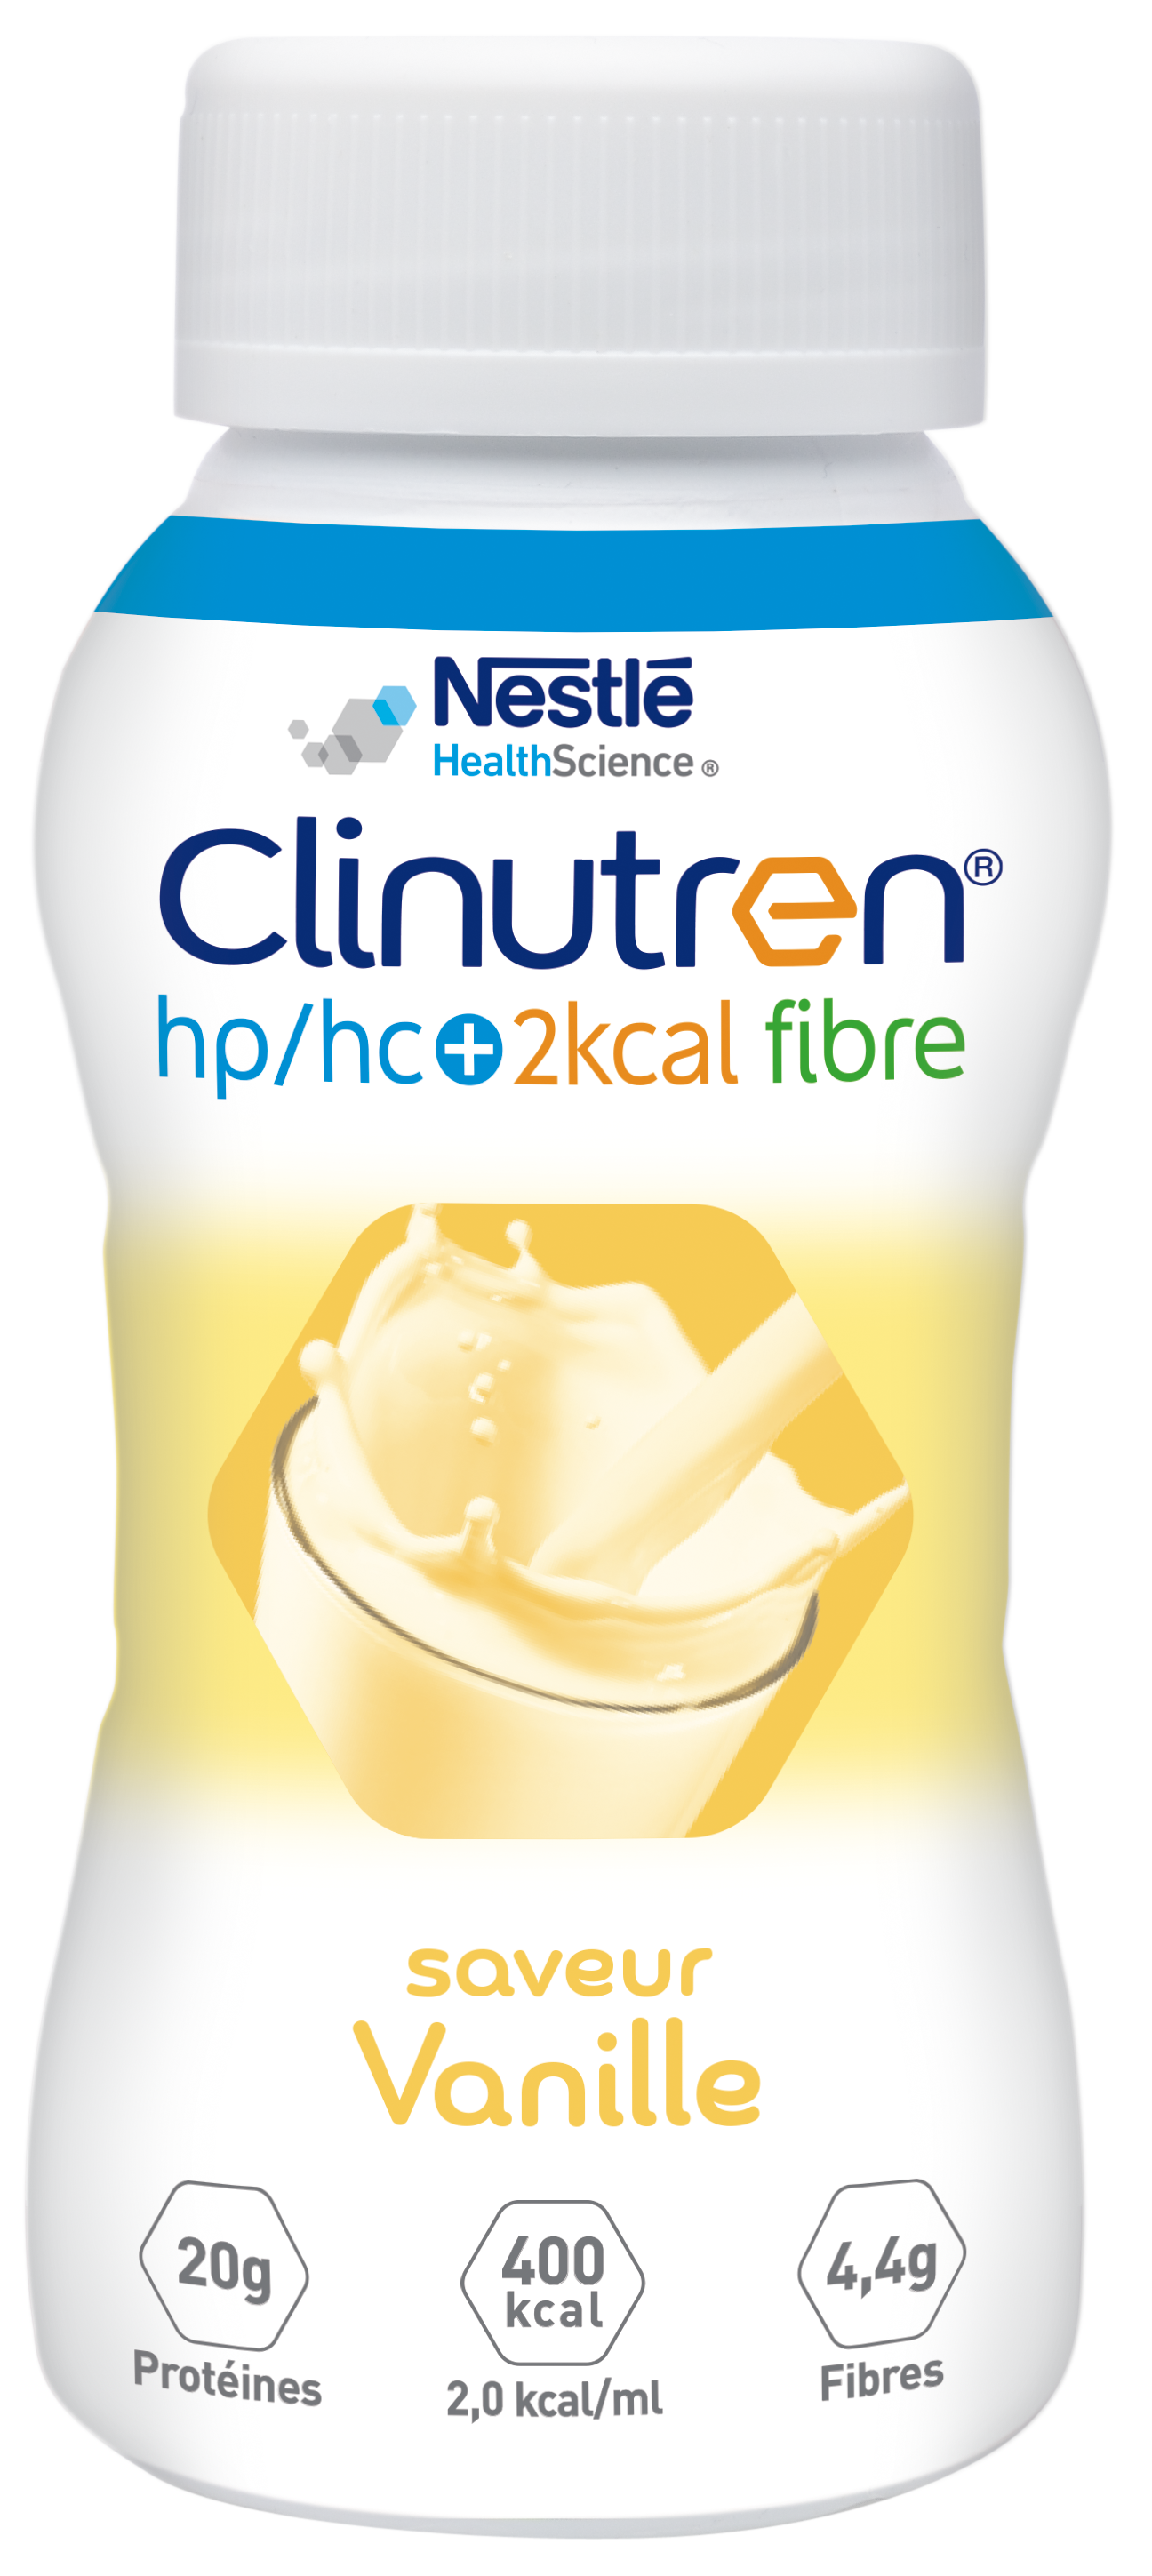 Clinutren HPHC+ 2kcal Fibre